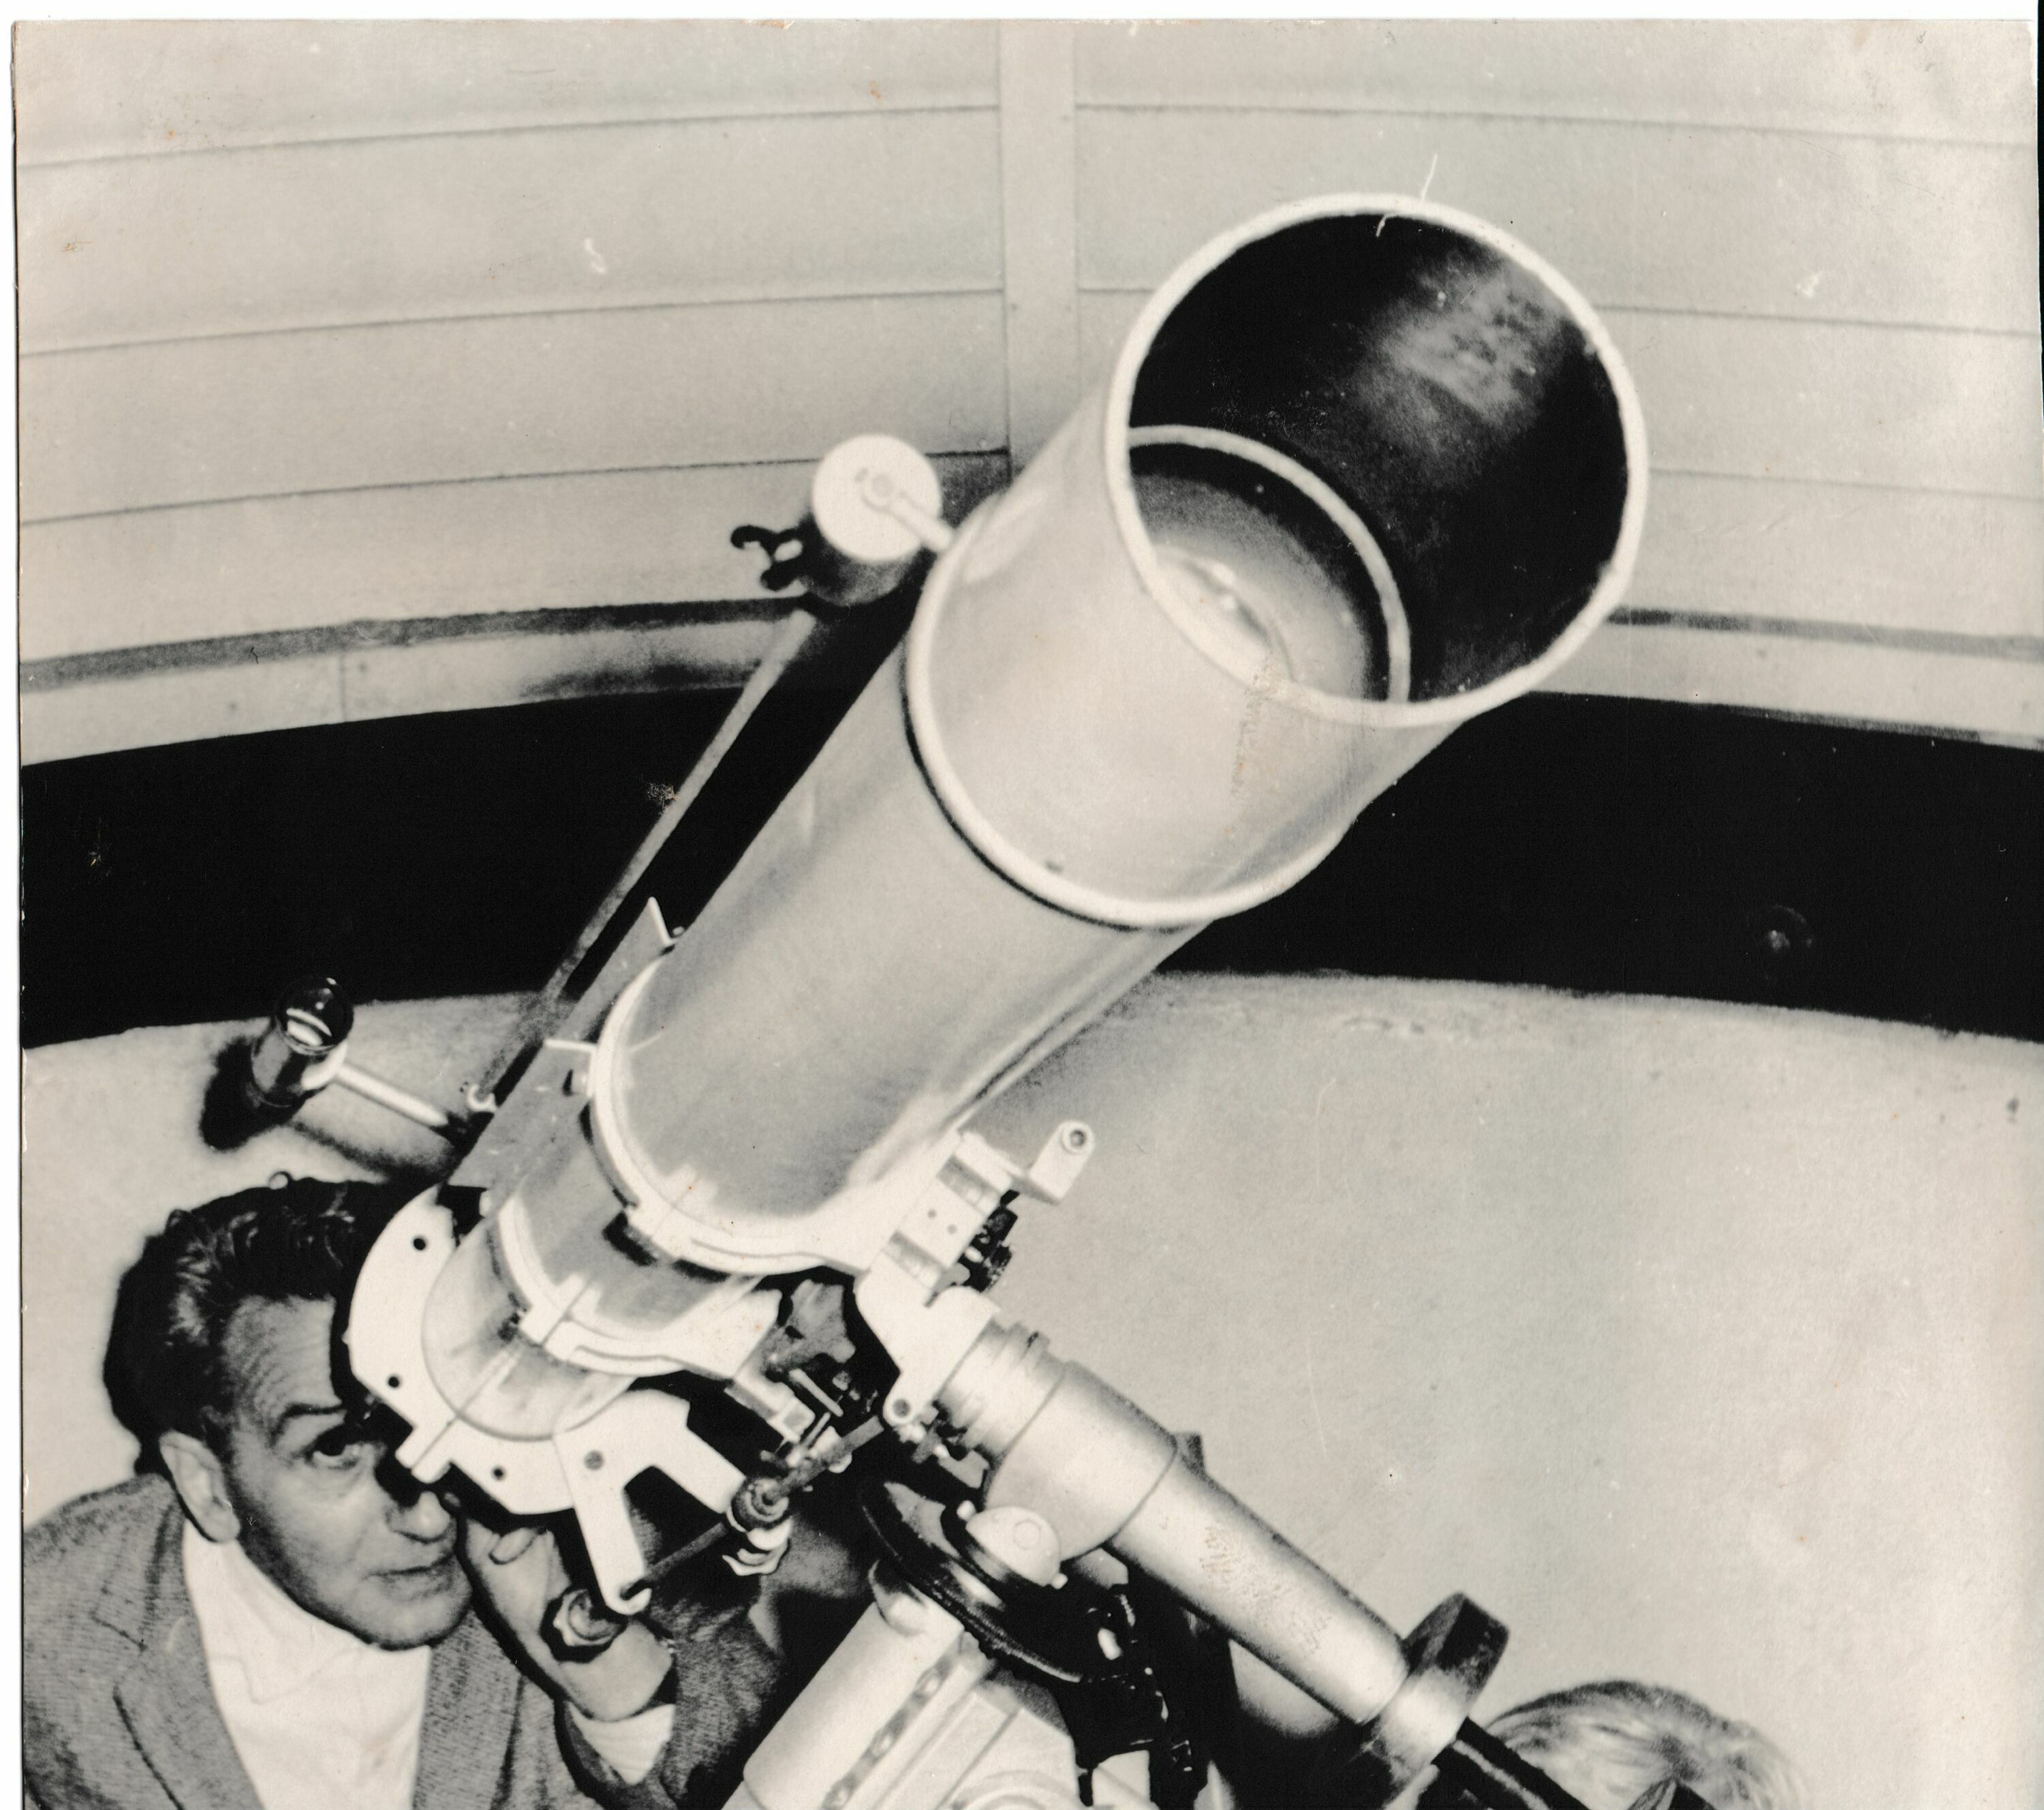 Schrzweiß-Foto von 1965. Erich Bär, Leiter der Volkssternwarte, schaut in der linken unteren Bildecke in ein durch die Aufnahmeperspektive riesig erscheinendes Fernrohr, welches diagonal nach rechts oben das gesamte Bild einnimmt.